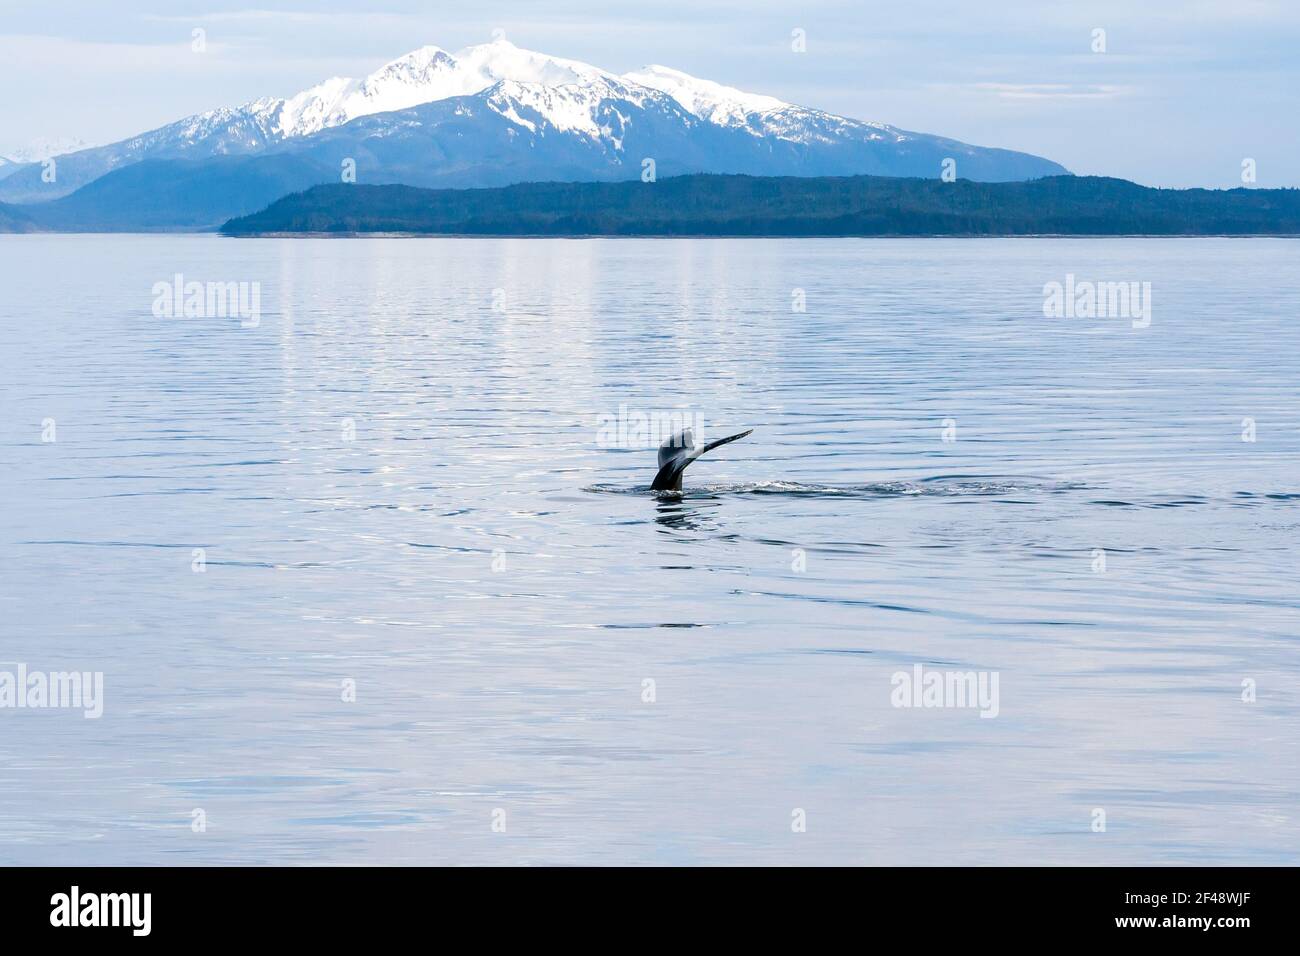 La barque ou la queue d'une baleine à bosse (Megaptera novaeangliae) lorsqu'elle plonge dans les eaux du sud de l'Alaska, avec des montagnes enneigées dans le backgro Banque D'Images